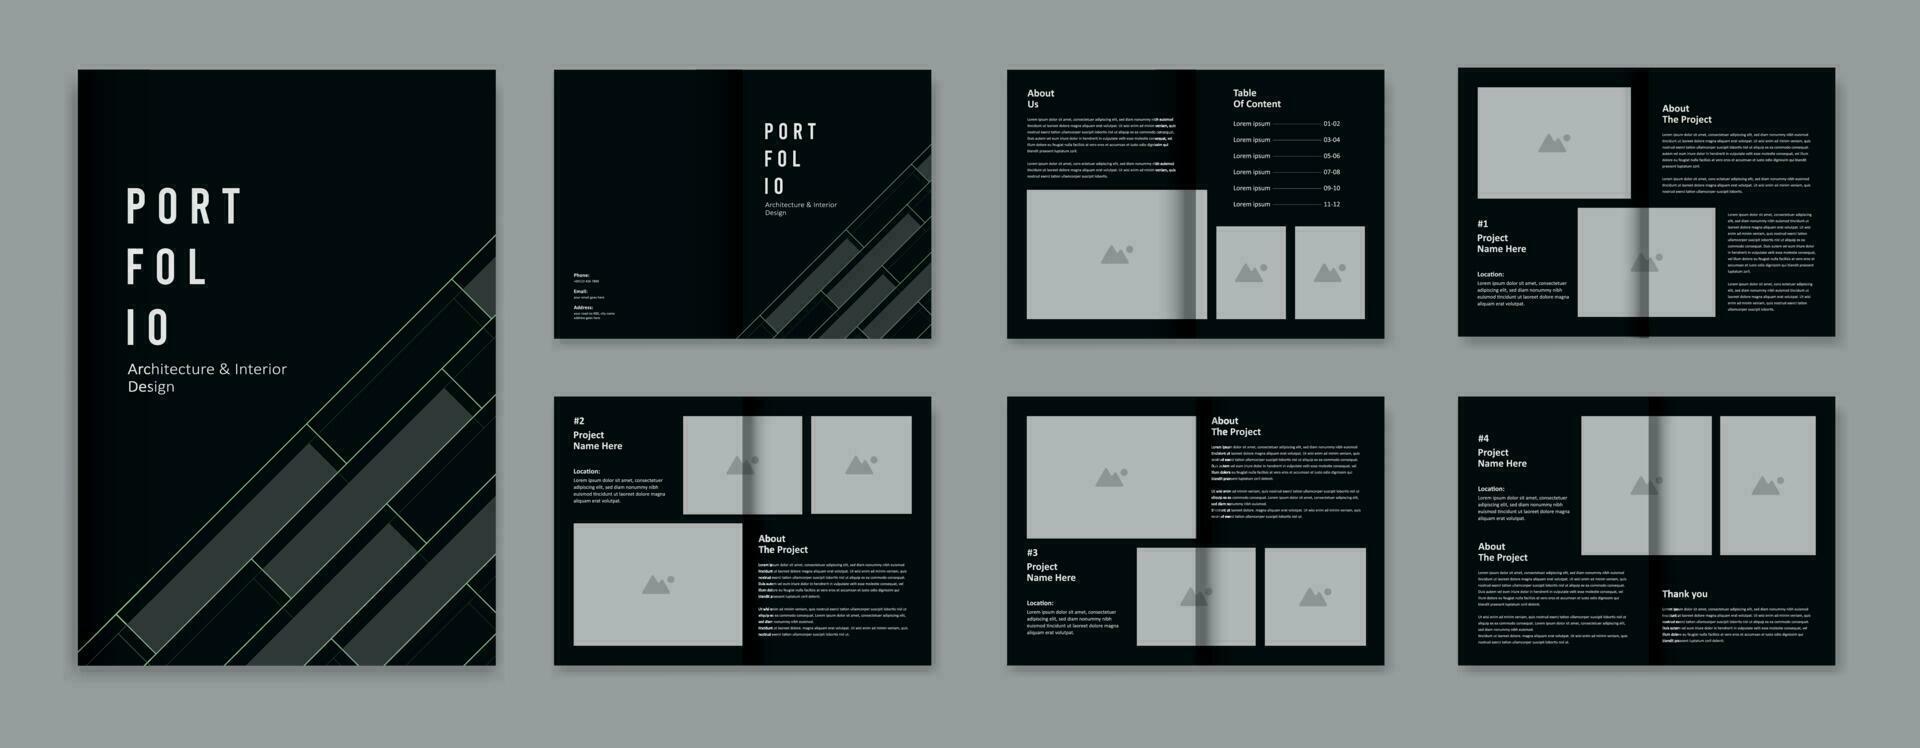 Architecture portfolio design template, architectural portfolio layout design, a4 size print ready brochure for architectural design. vector